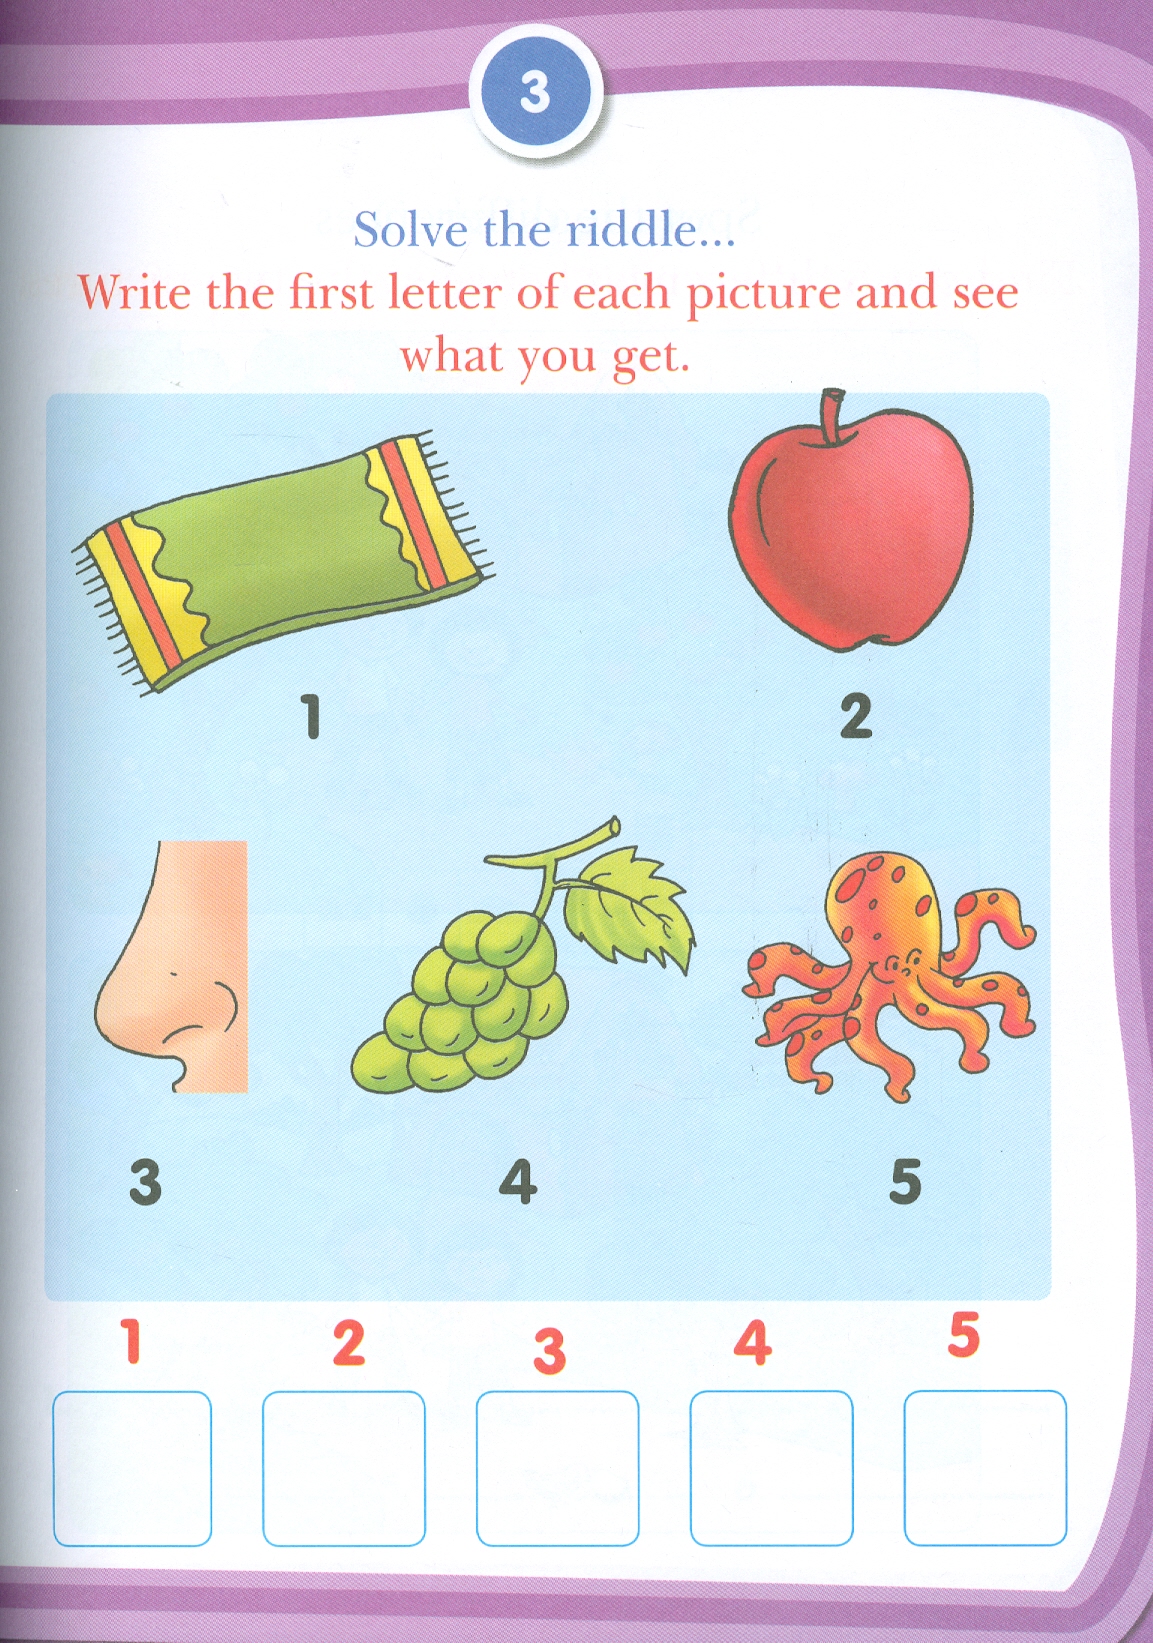 Kid's 4th Activity Book Logical Reasoning - Age 6+ (Test Your Brain) (Các Hoạt Động Suy Luận Logic - Kiểm Tra Kiến Thức Thường Thức 6+)